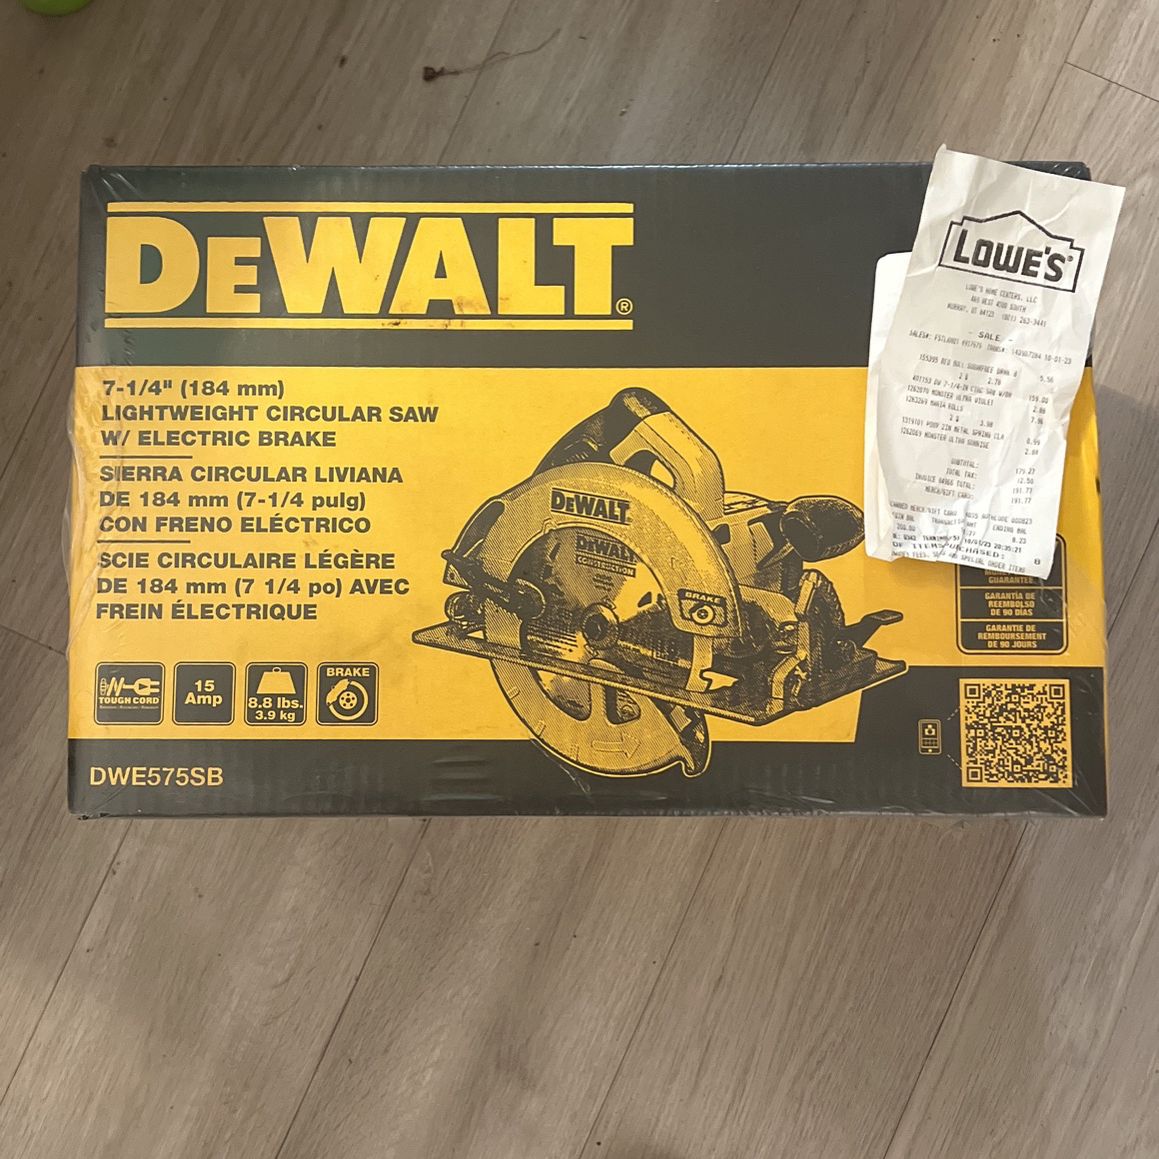 Brand New DeWalt 7-1/4” Circular Saw MSRP $179.99